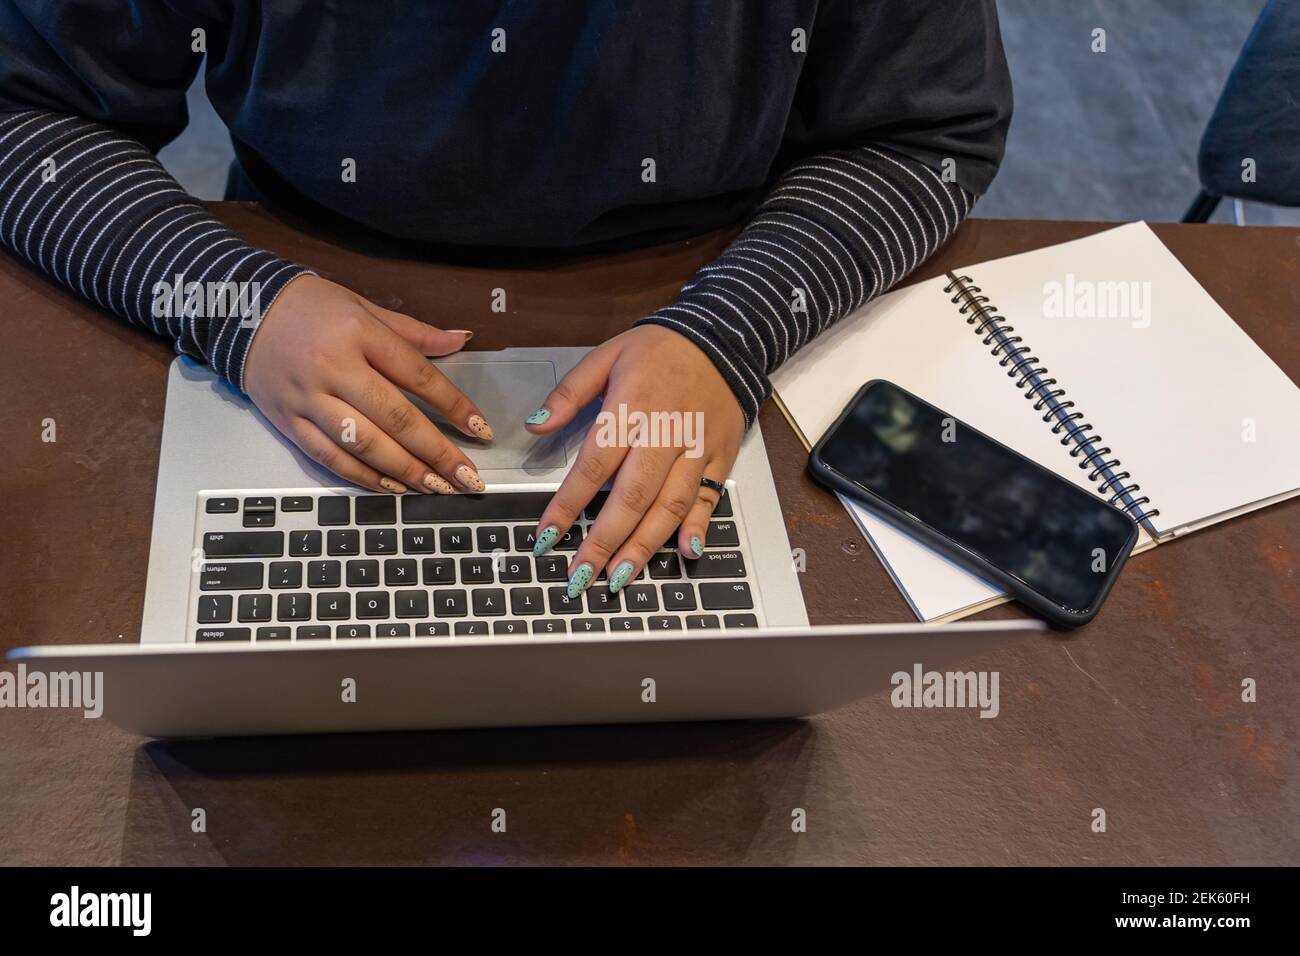 Femme main avec de beaux ongles dactylographiant clavier d'ordinateur portable Banque D'Images